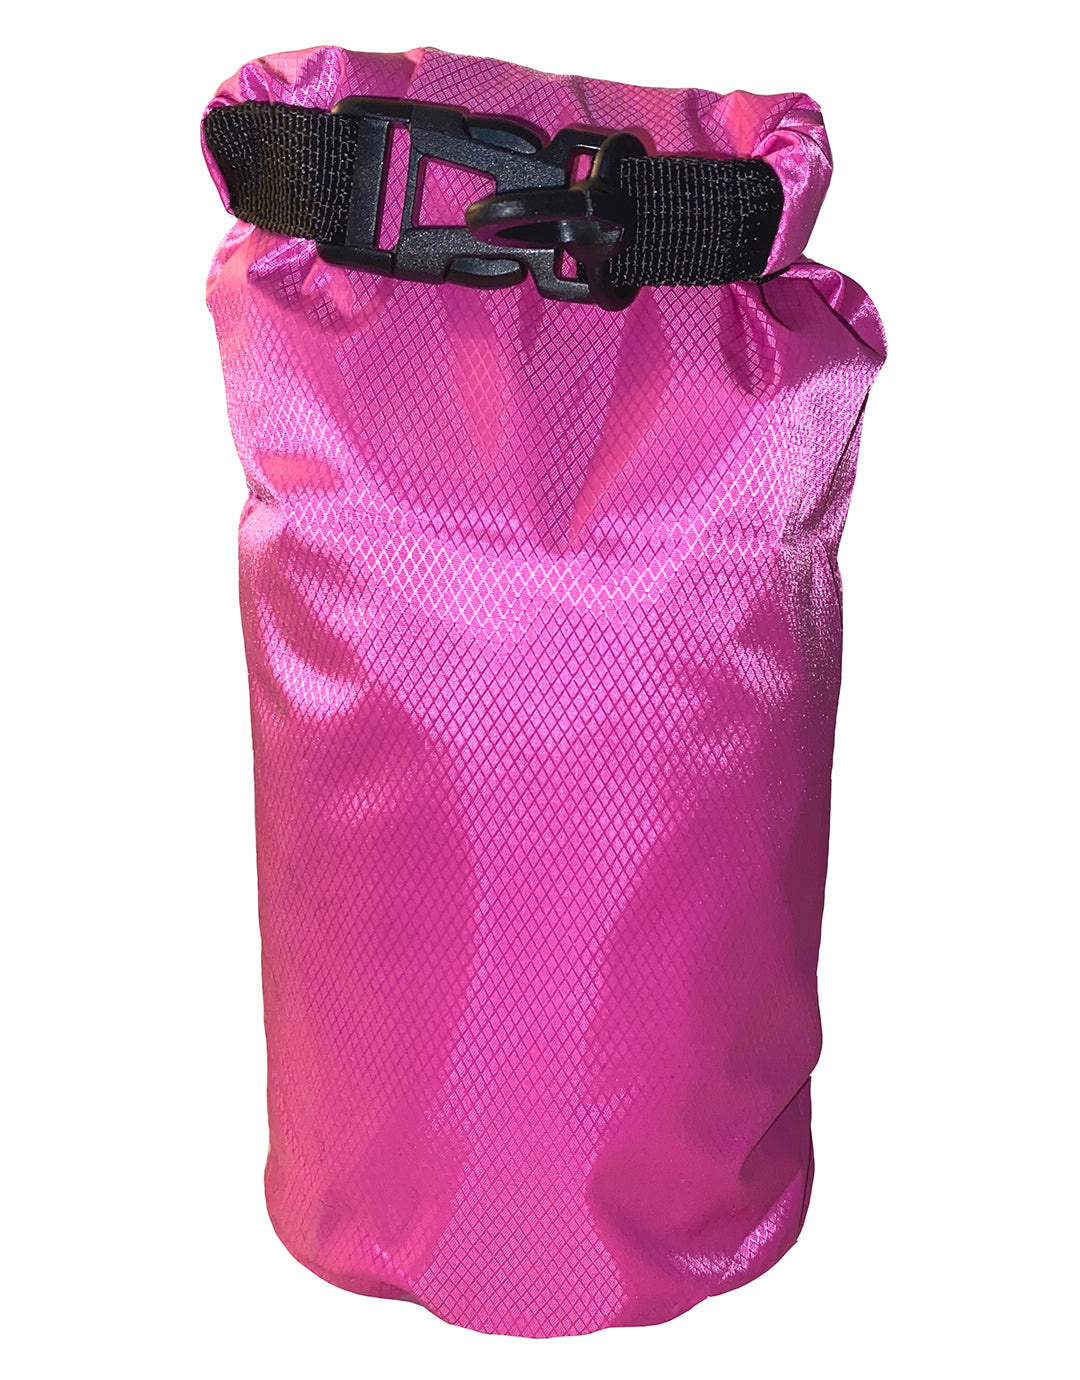 Swimwear Dry Bag - Fuchsia